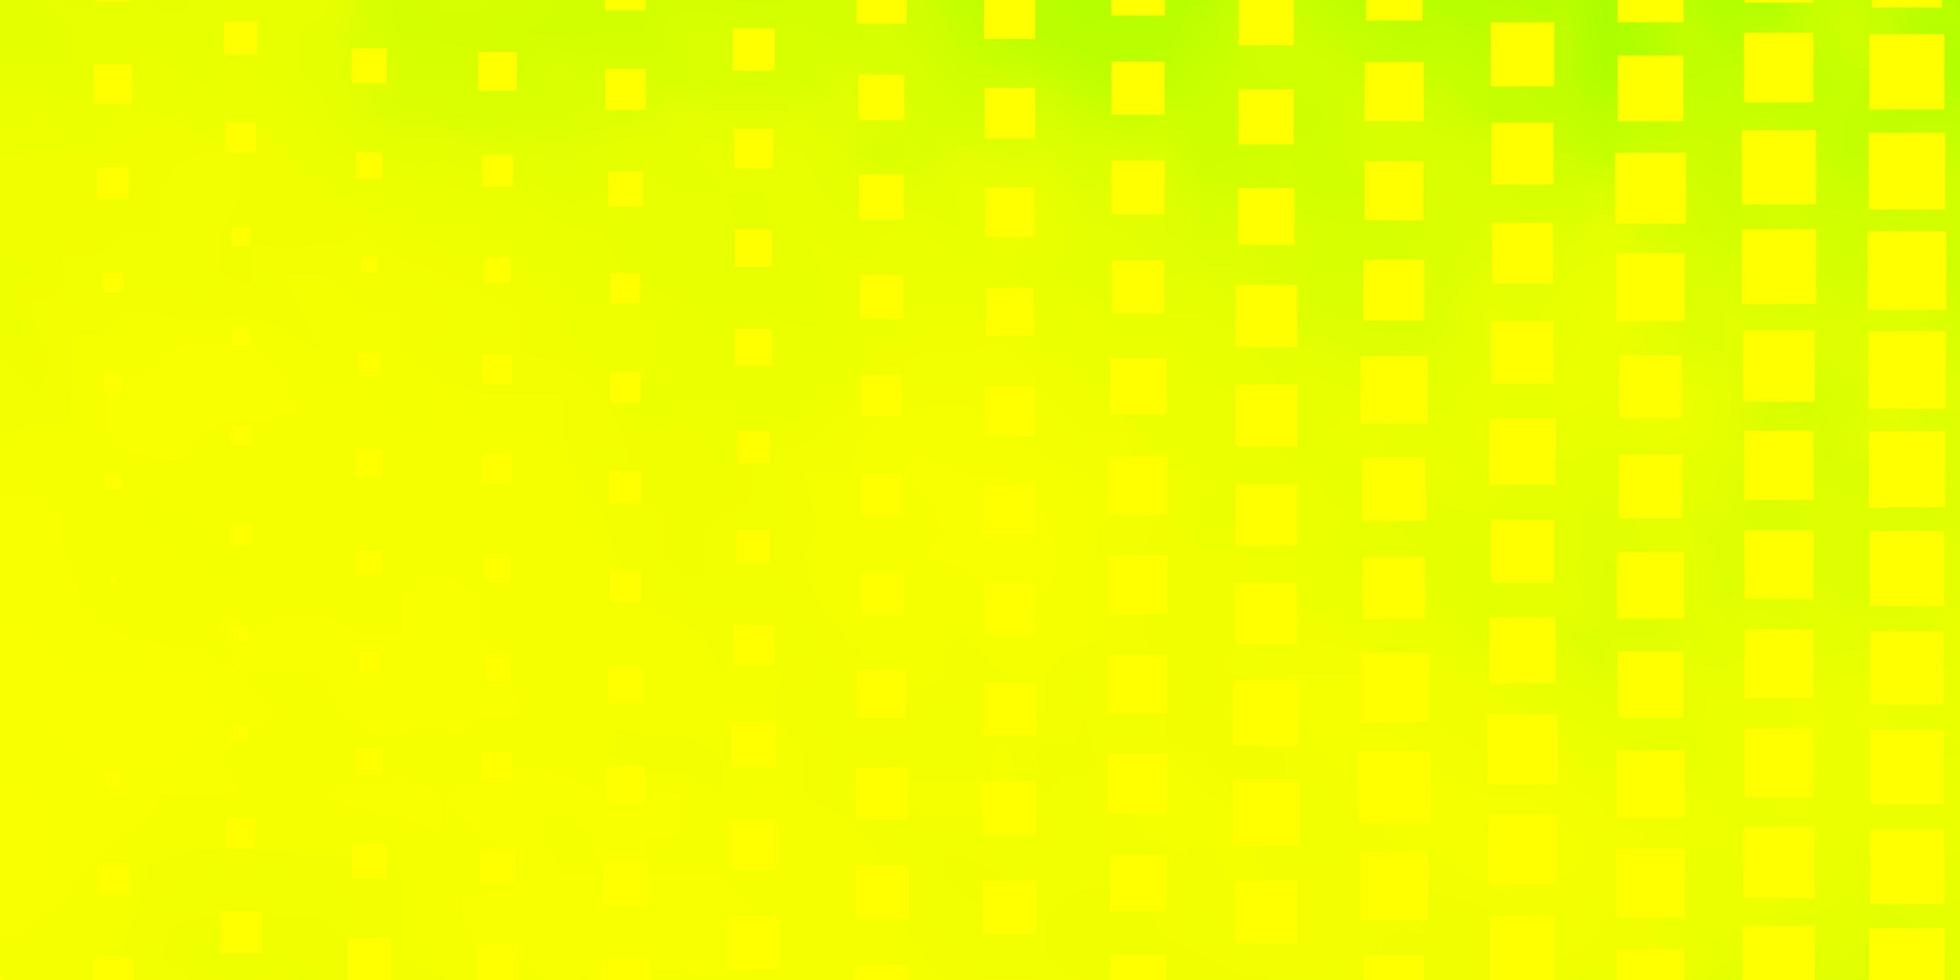 padrão de vetor amarelo verde claro em ilustração de gradiente abstrato estilo quadrado com design de retângulos para a promoção de seus negócios